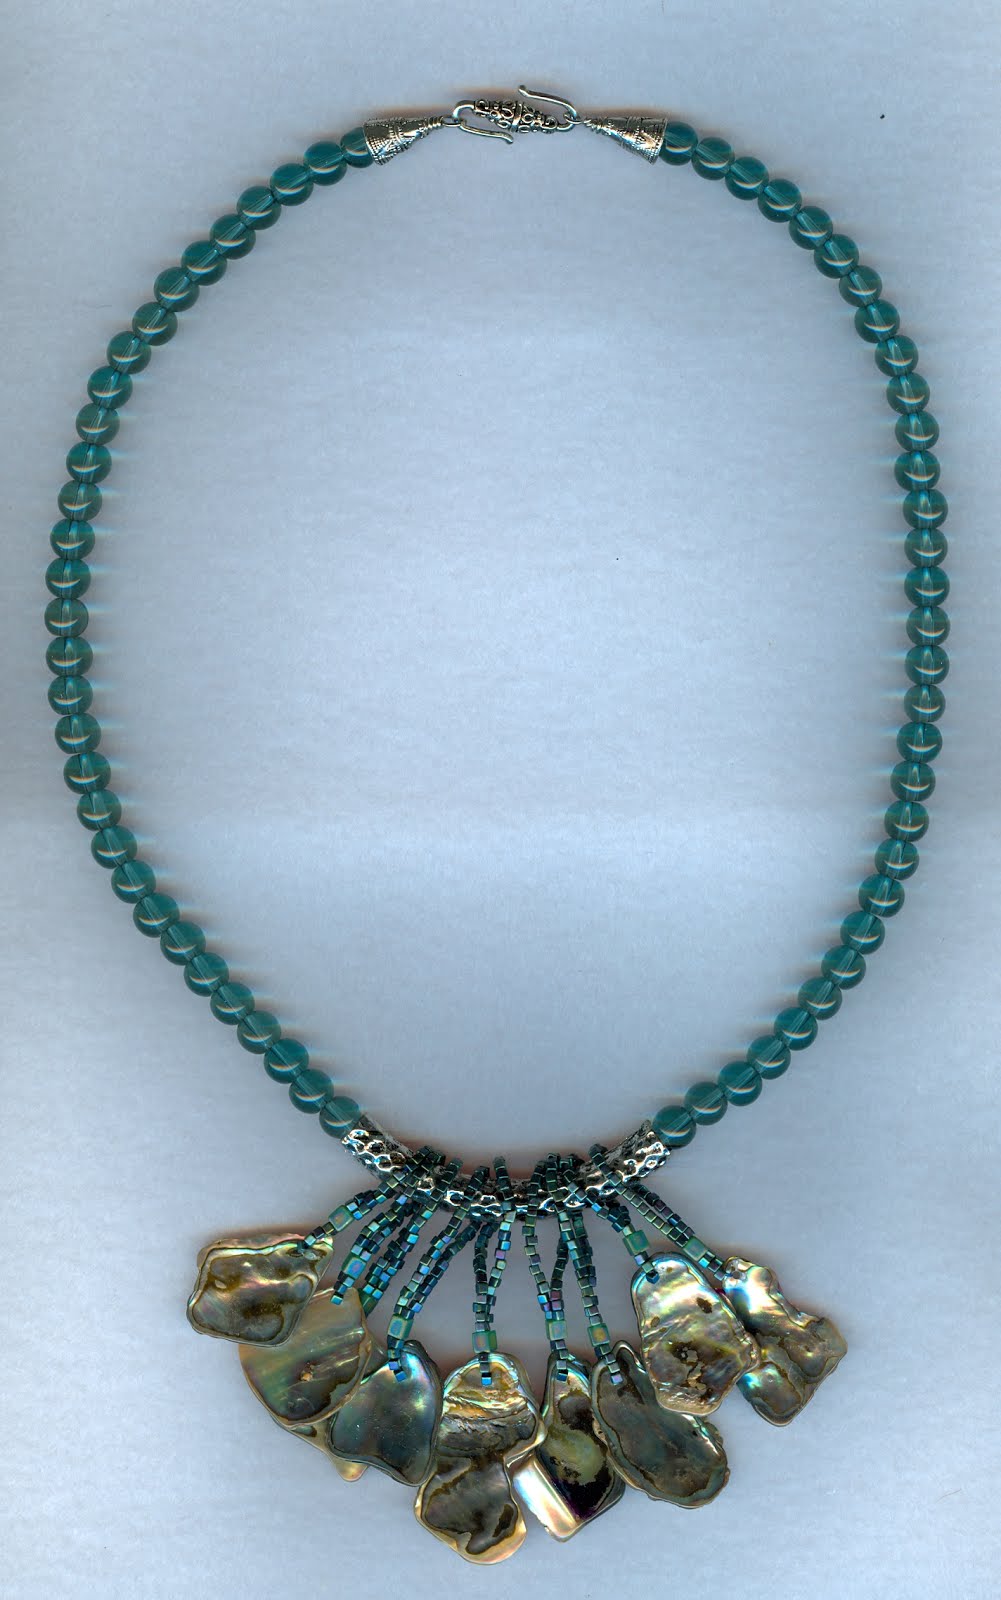 New Zealand Paua shell necklace